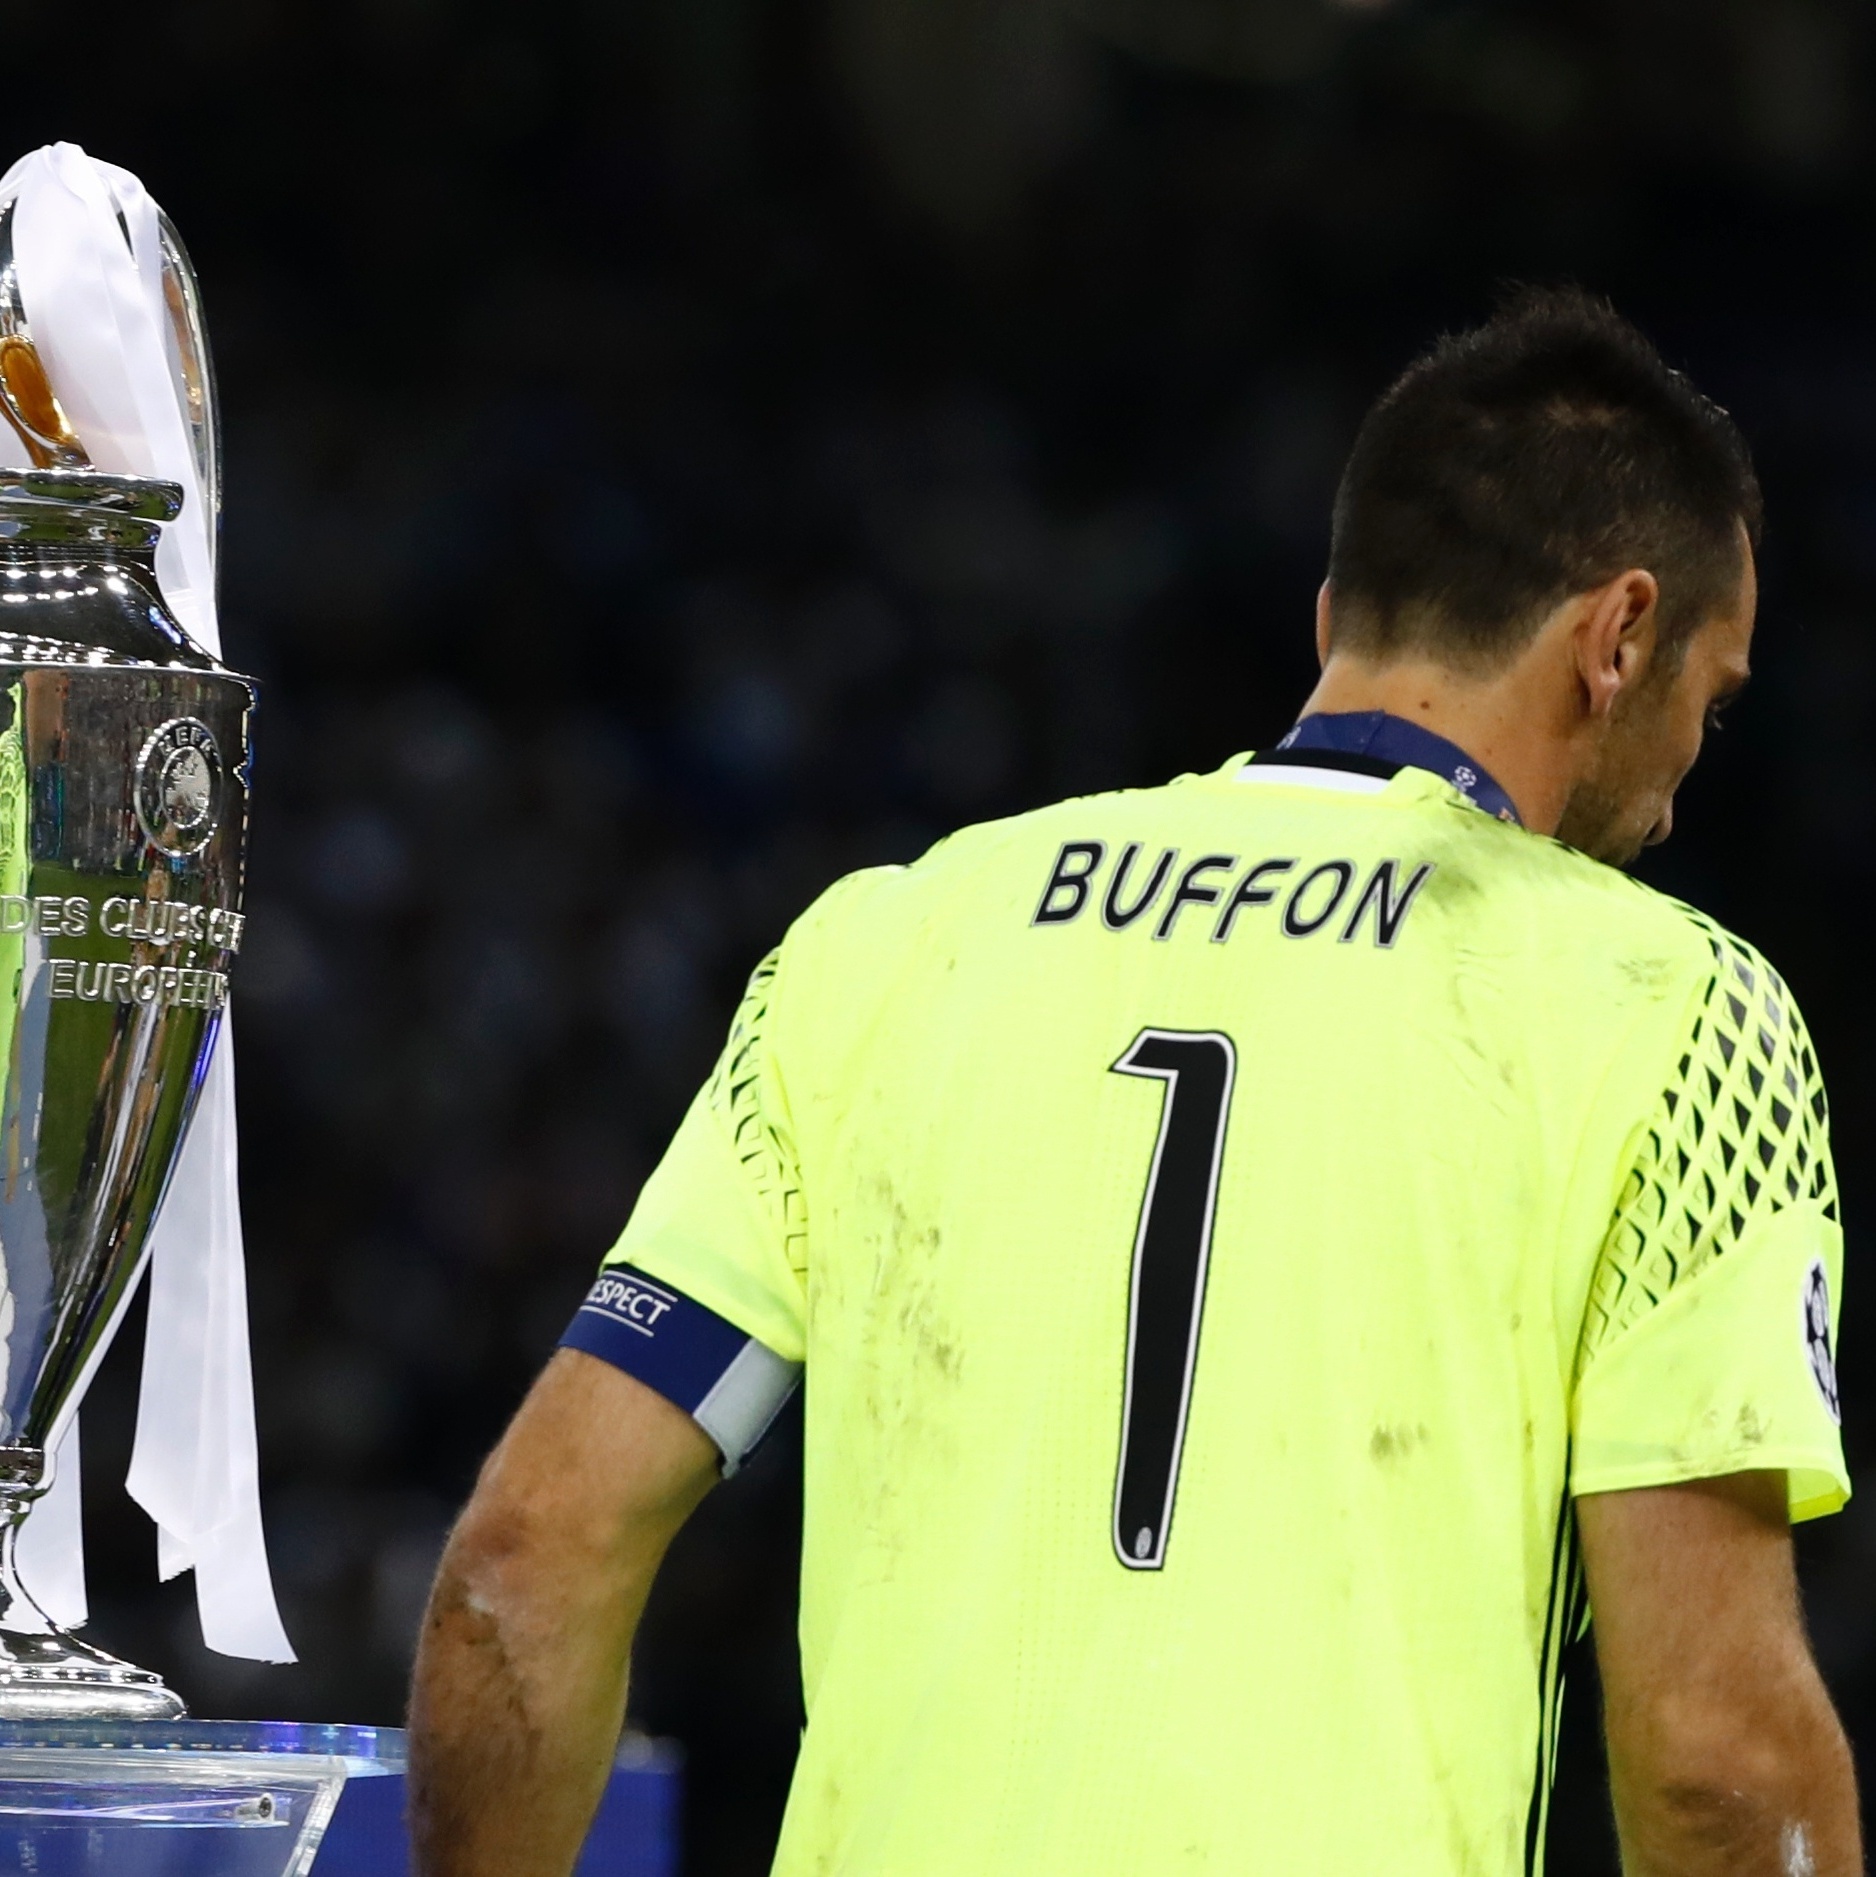 As 7 equipes que mais perderam finais de Champions League na história